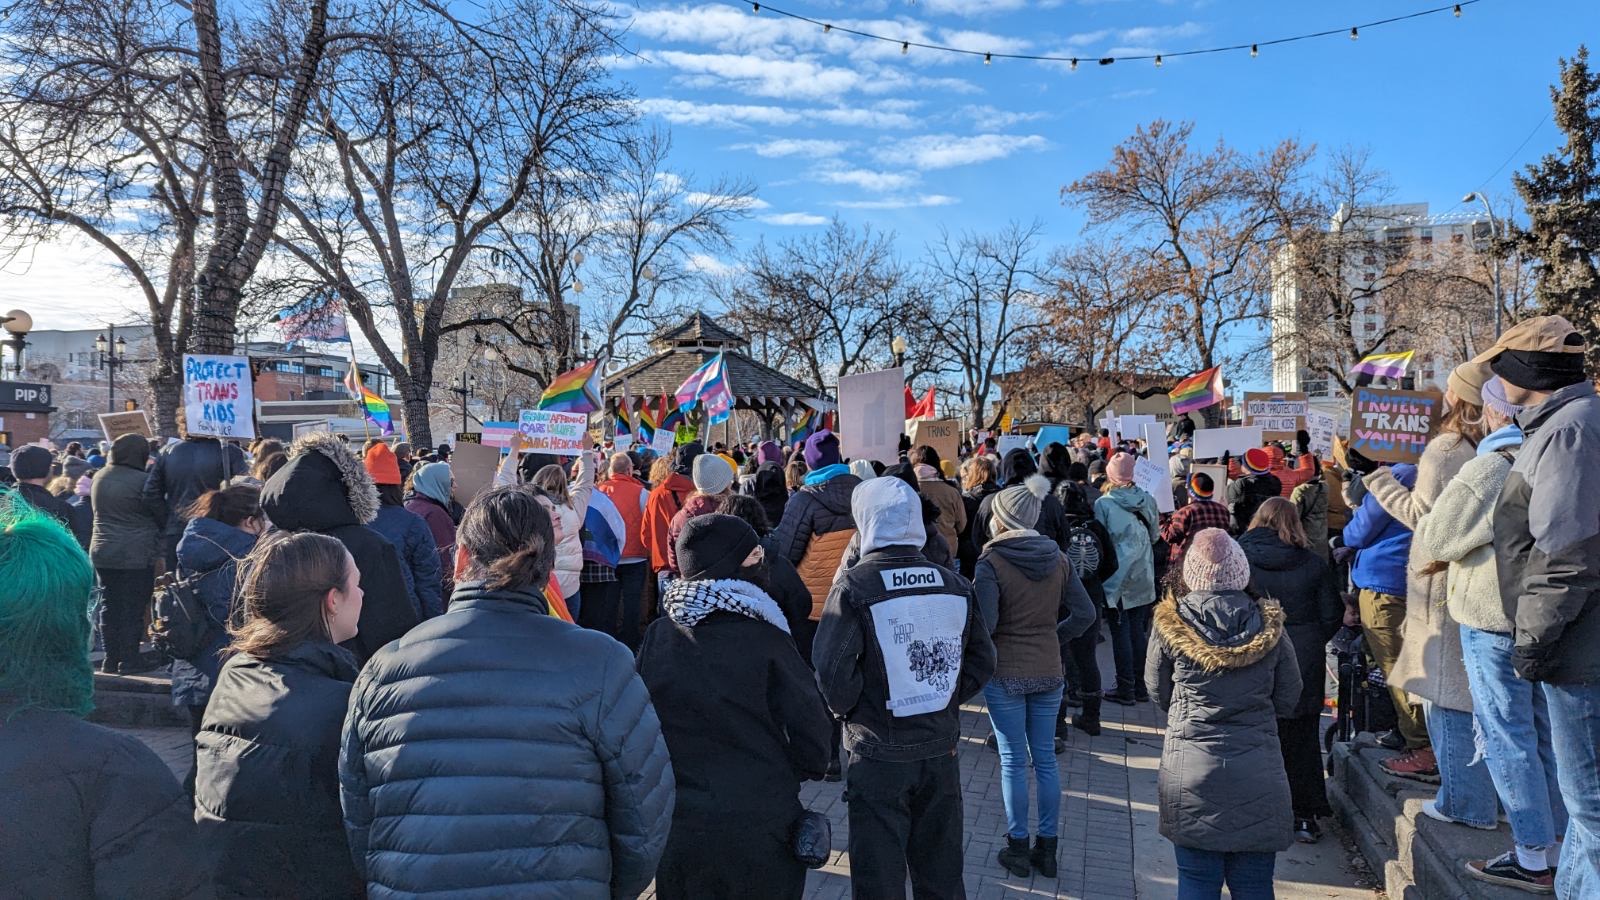 Les alliés transgenres se sont rassemblés en Alberta pour protester contre la politique proposée concernant les droits des transgenres.